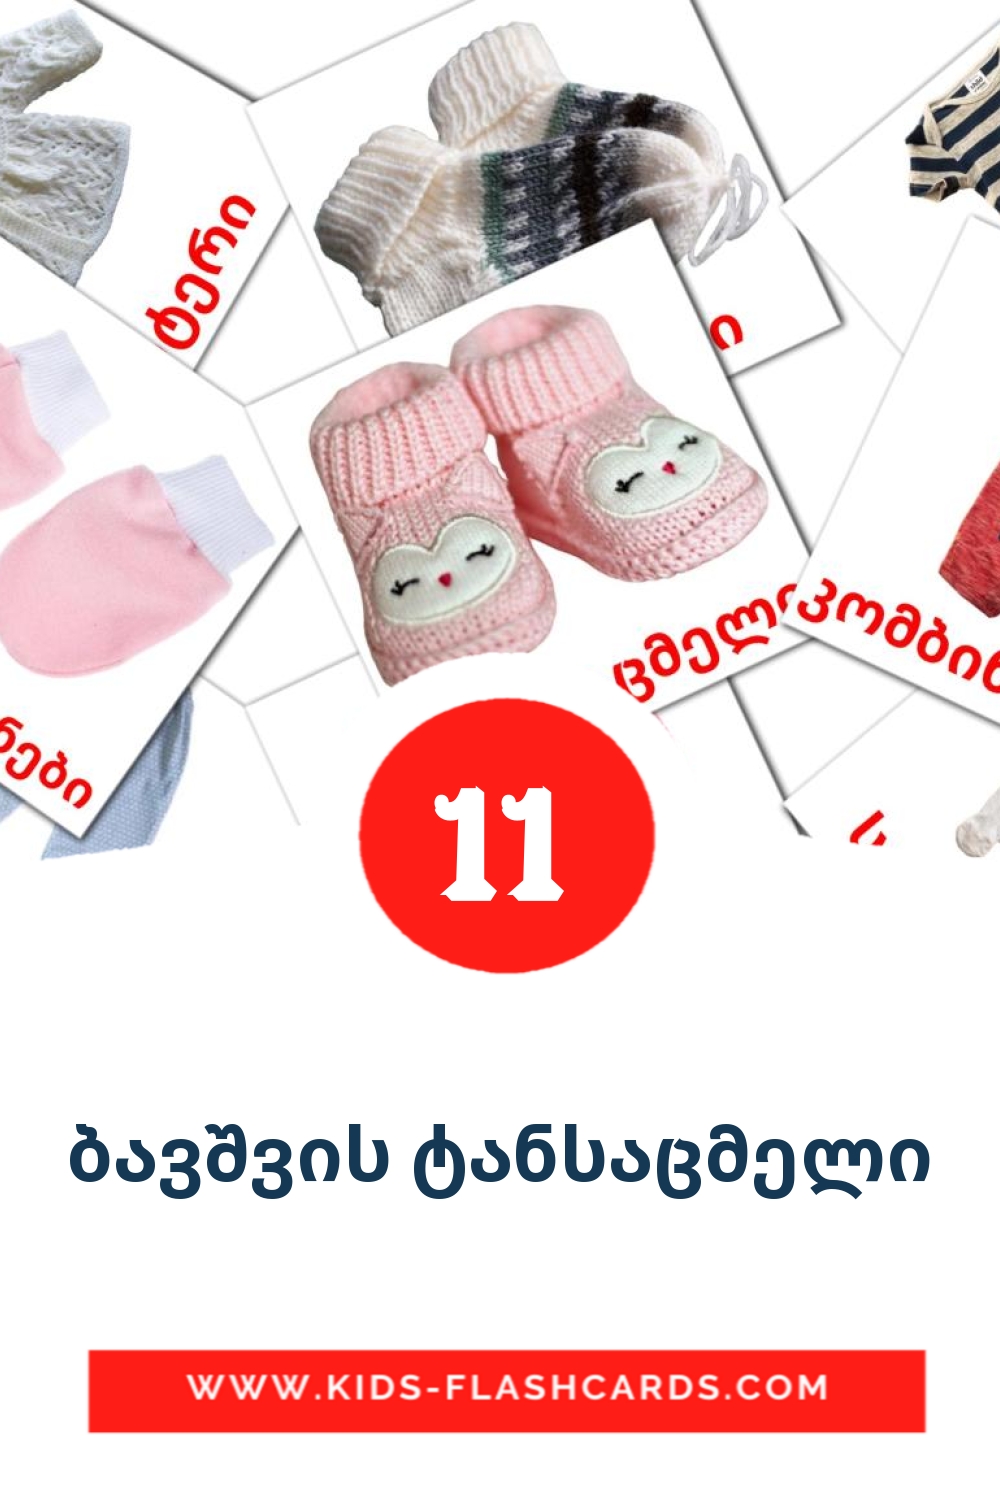 11 tarjetas didacticas de ბავშვის ტანსაცმელი para el jardín de infancia en georgiano